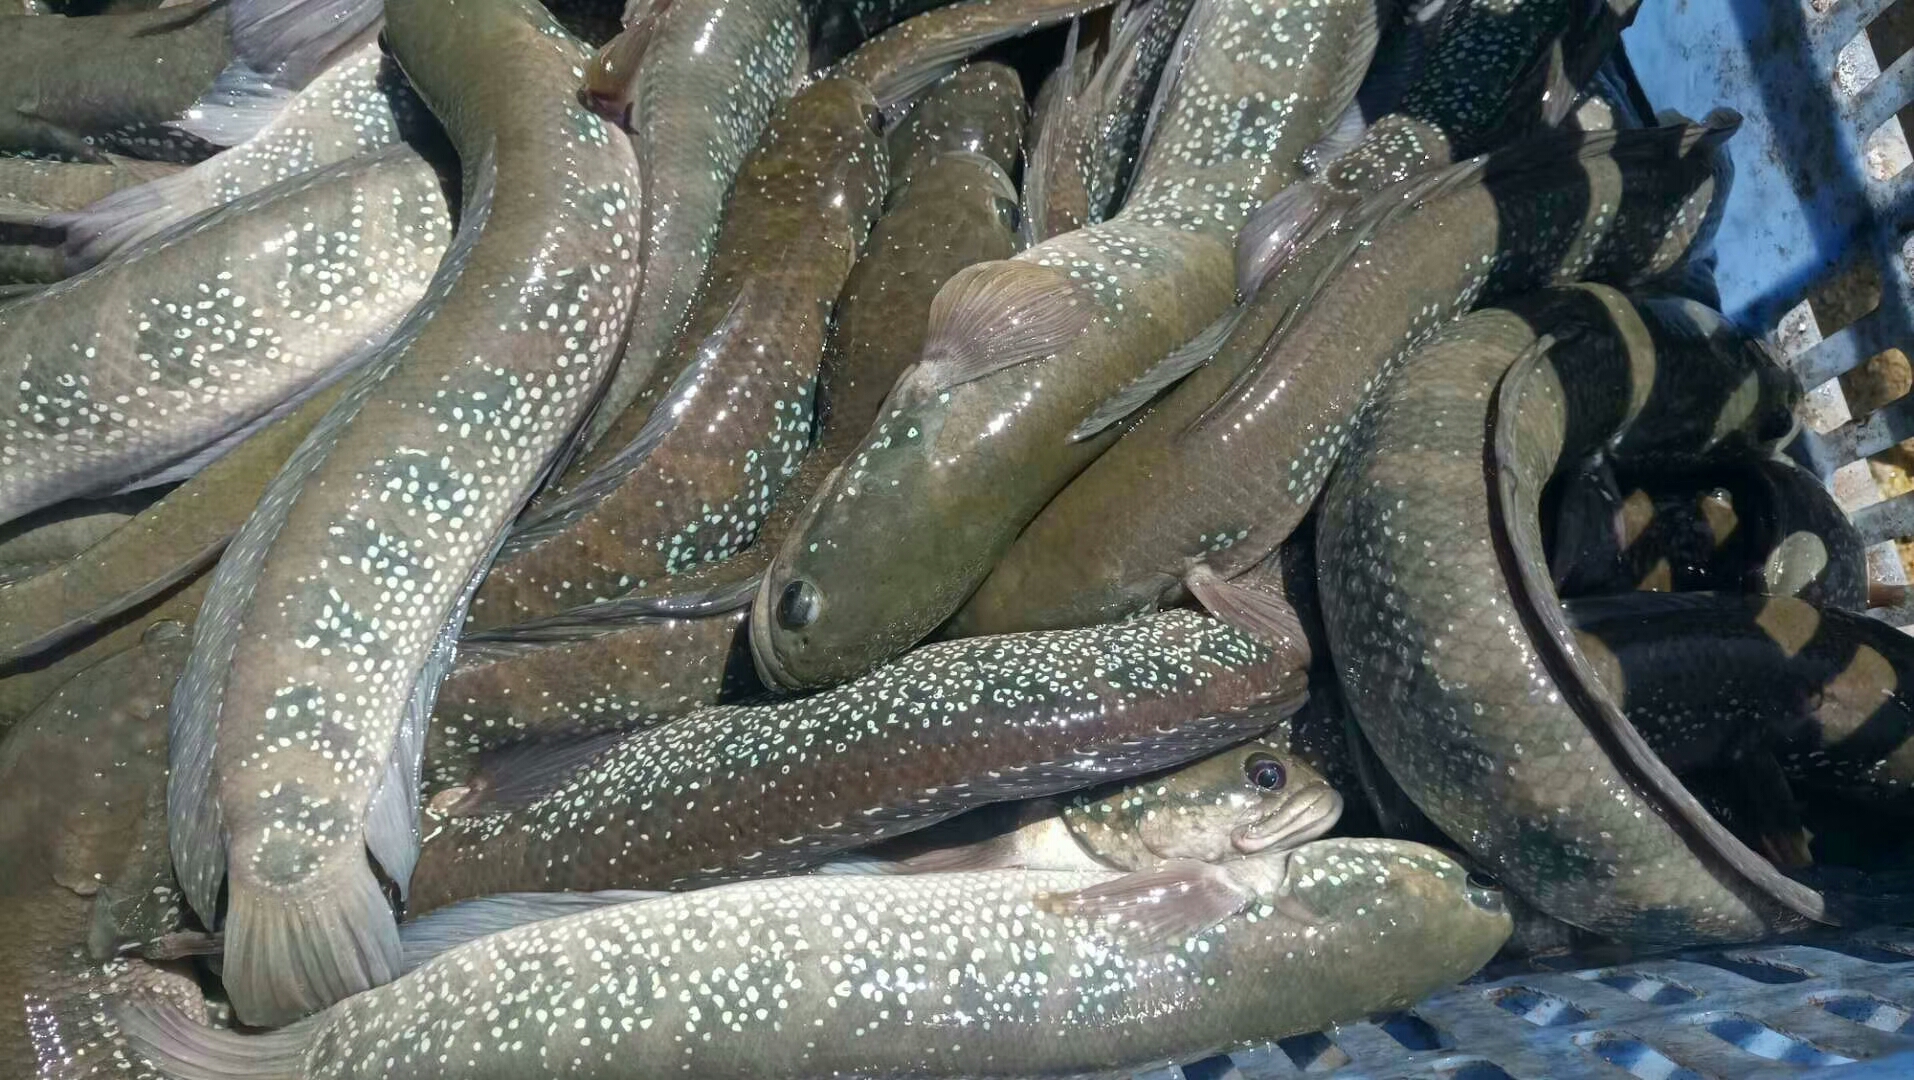 渔场直销 七星鱼苗 山斑鱼 淡水养殖 支持线上保障交易